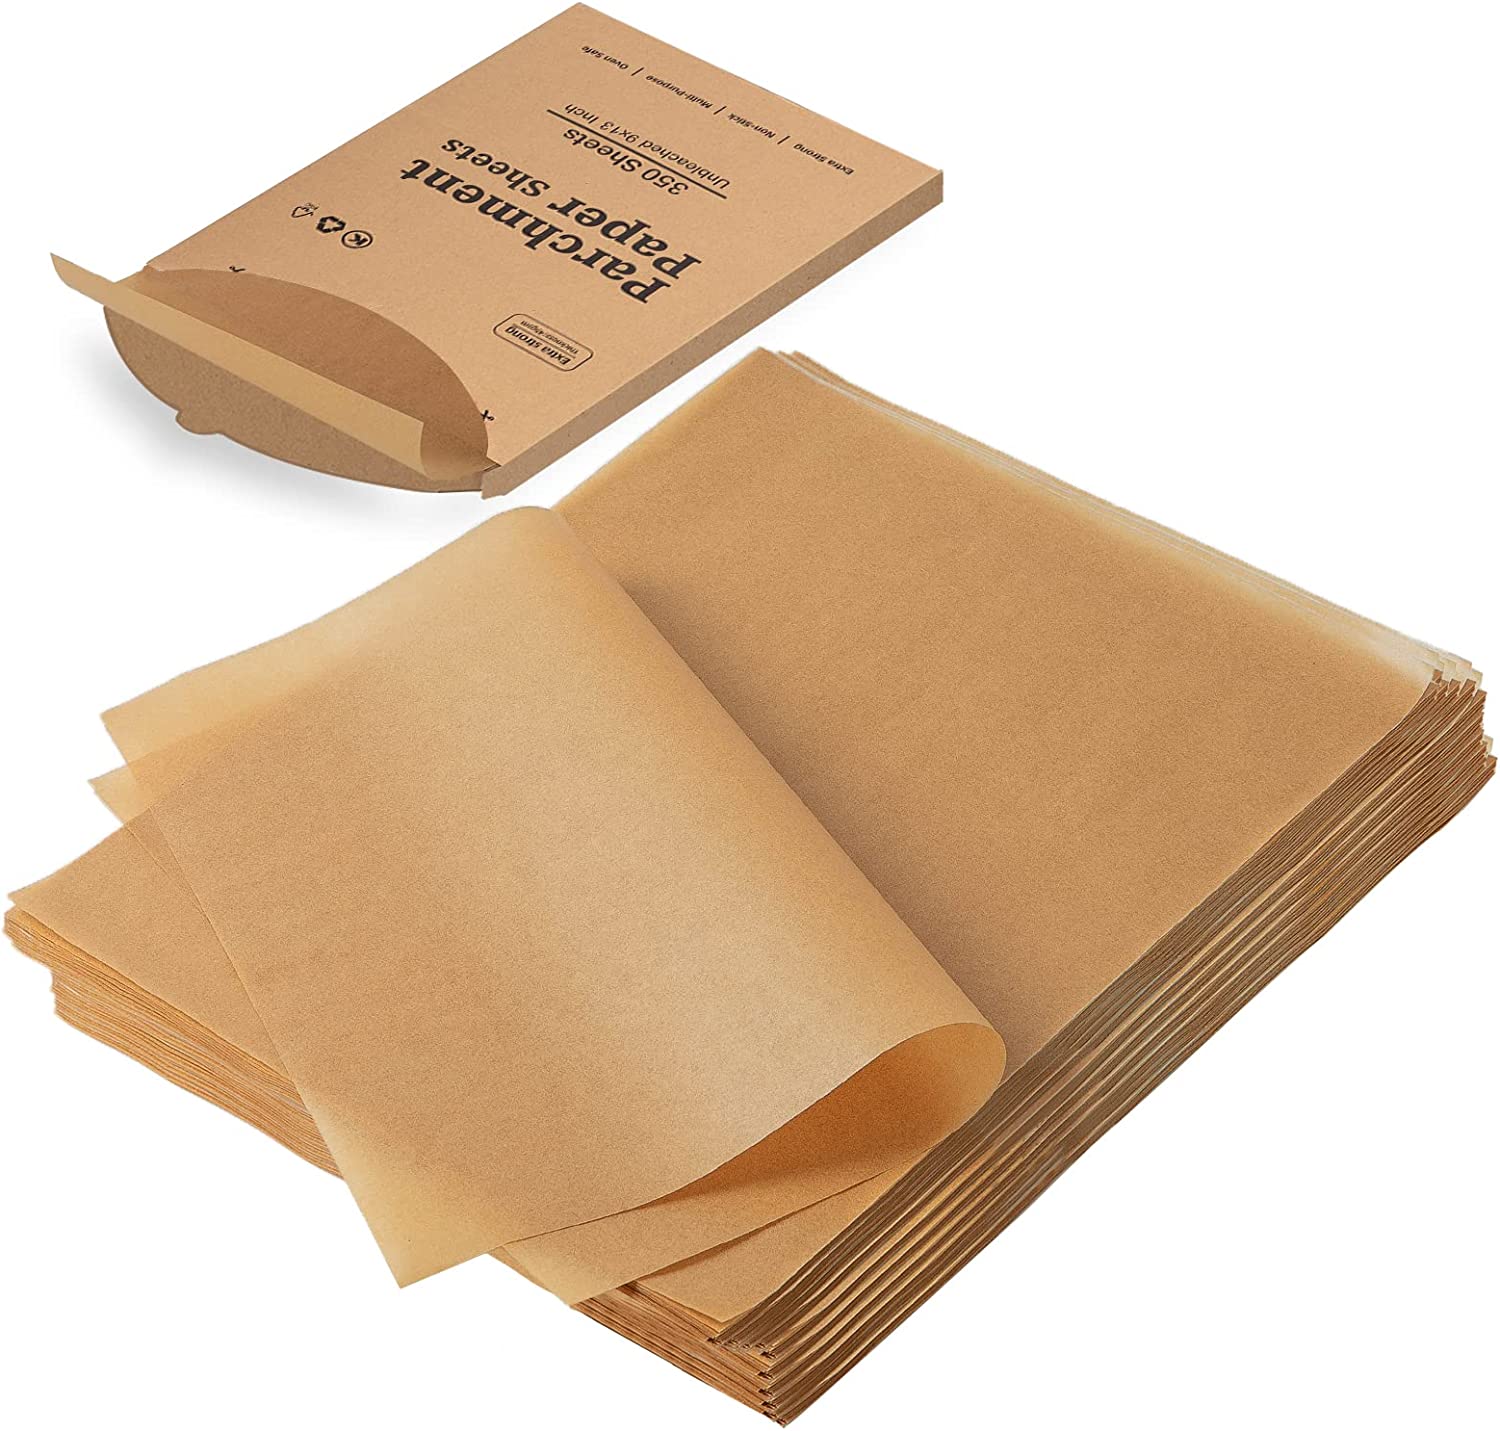  200 Pcs Parchment Paper Sheets 9 x 13 Inches, Precut